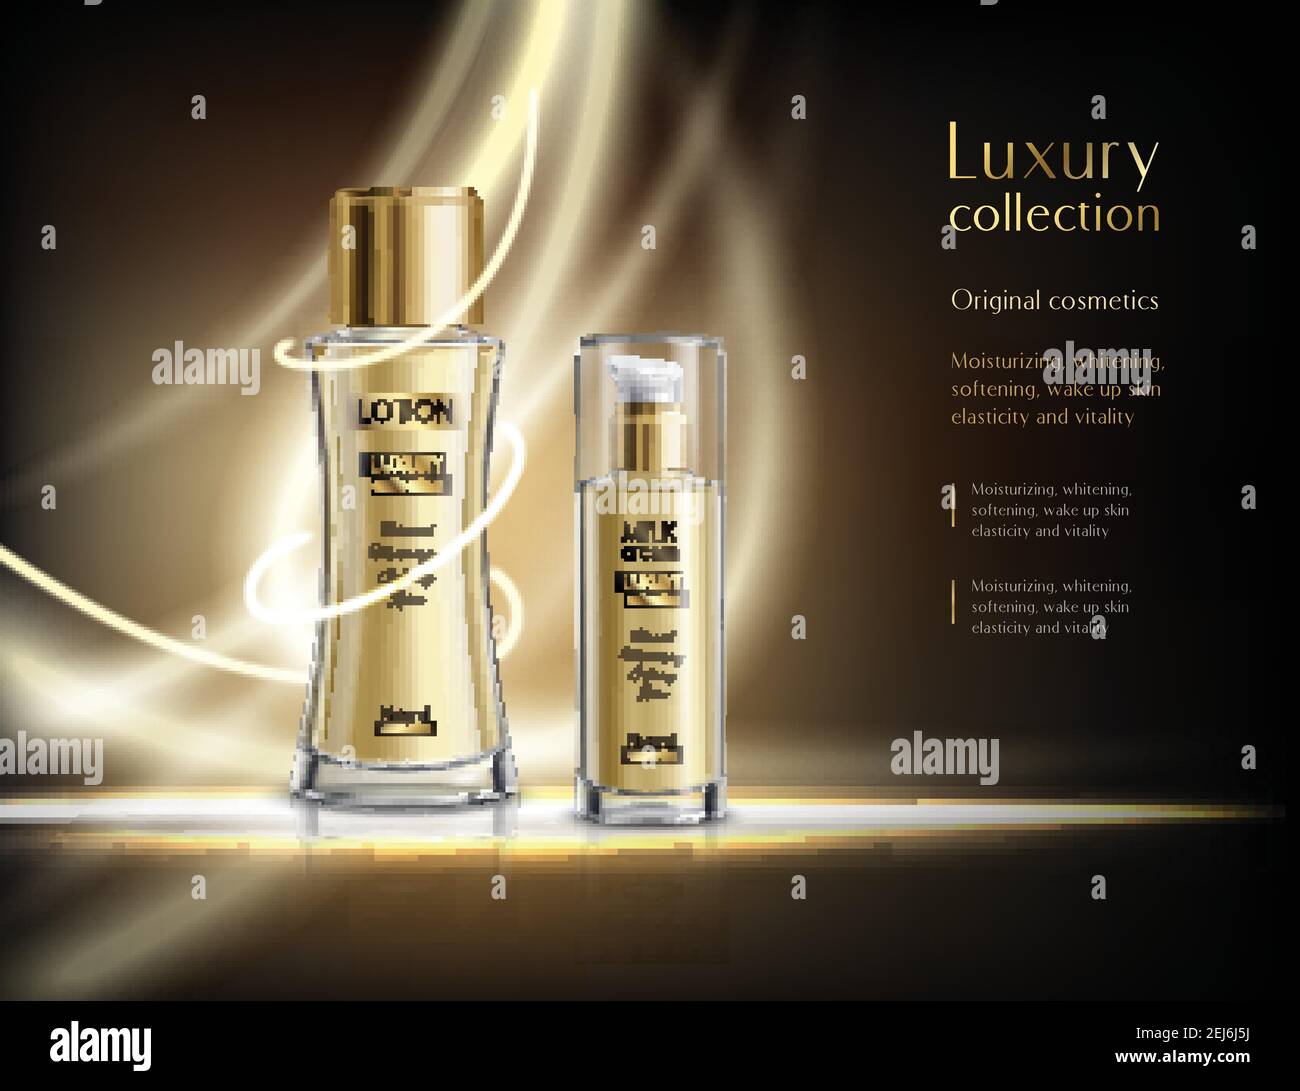 Luxe parfum cosmétiques collection affiche publicitaire réaliste avec  lotion luminante illustration vectorielle de fond sombre pour flacons  pulvérisateurs en verre Image Vectorielle Stock - Alamy